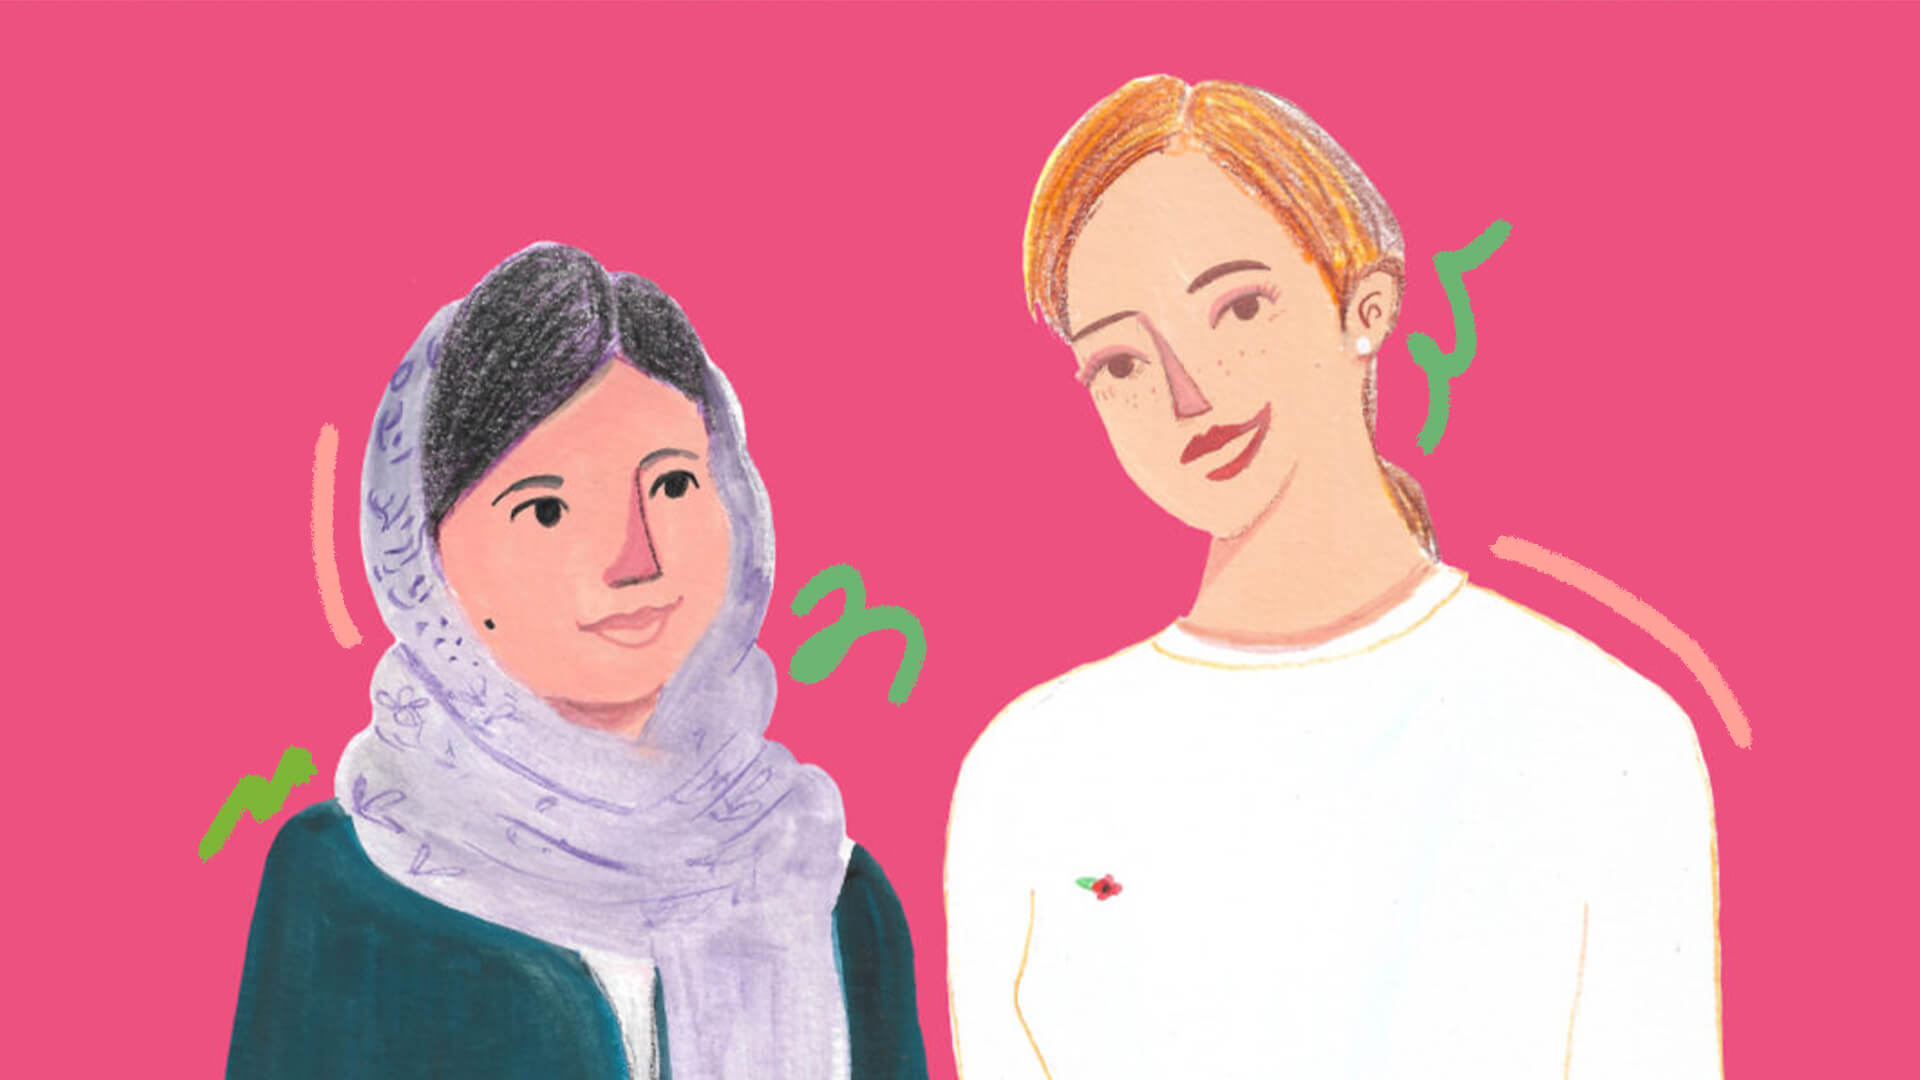 Ilustração do miolo do livro "Amigas que se encontraram na história" com a dupla Emma Watson & Malala Yousafzai num fundo rosa e rabiscos verdes como intervenções de arte